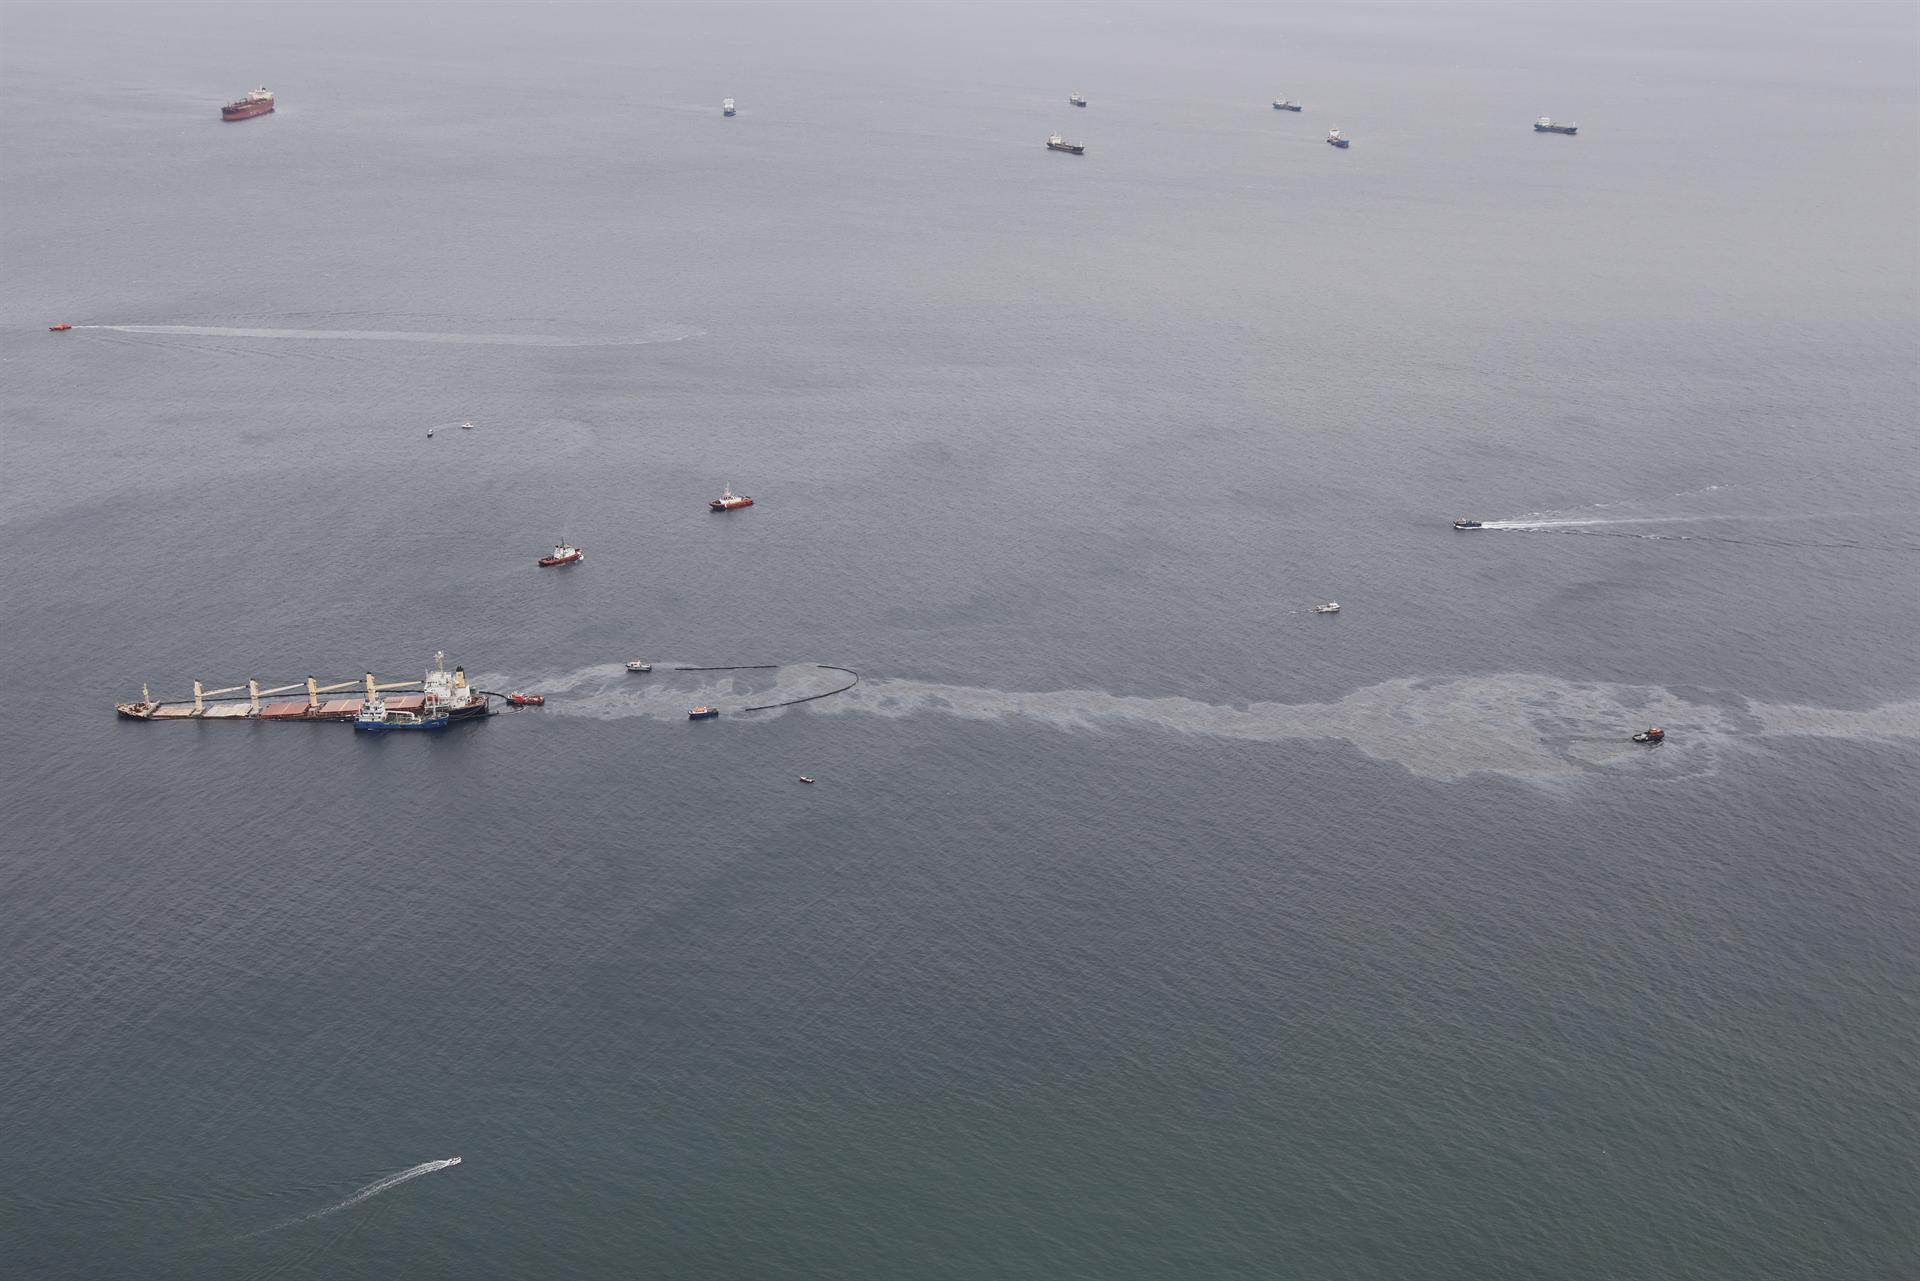 Un software predice el movimiento del petróleo vertido en el mar en 5 minutos